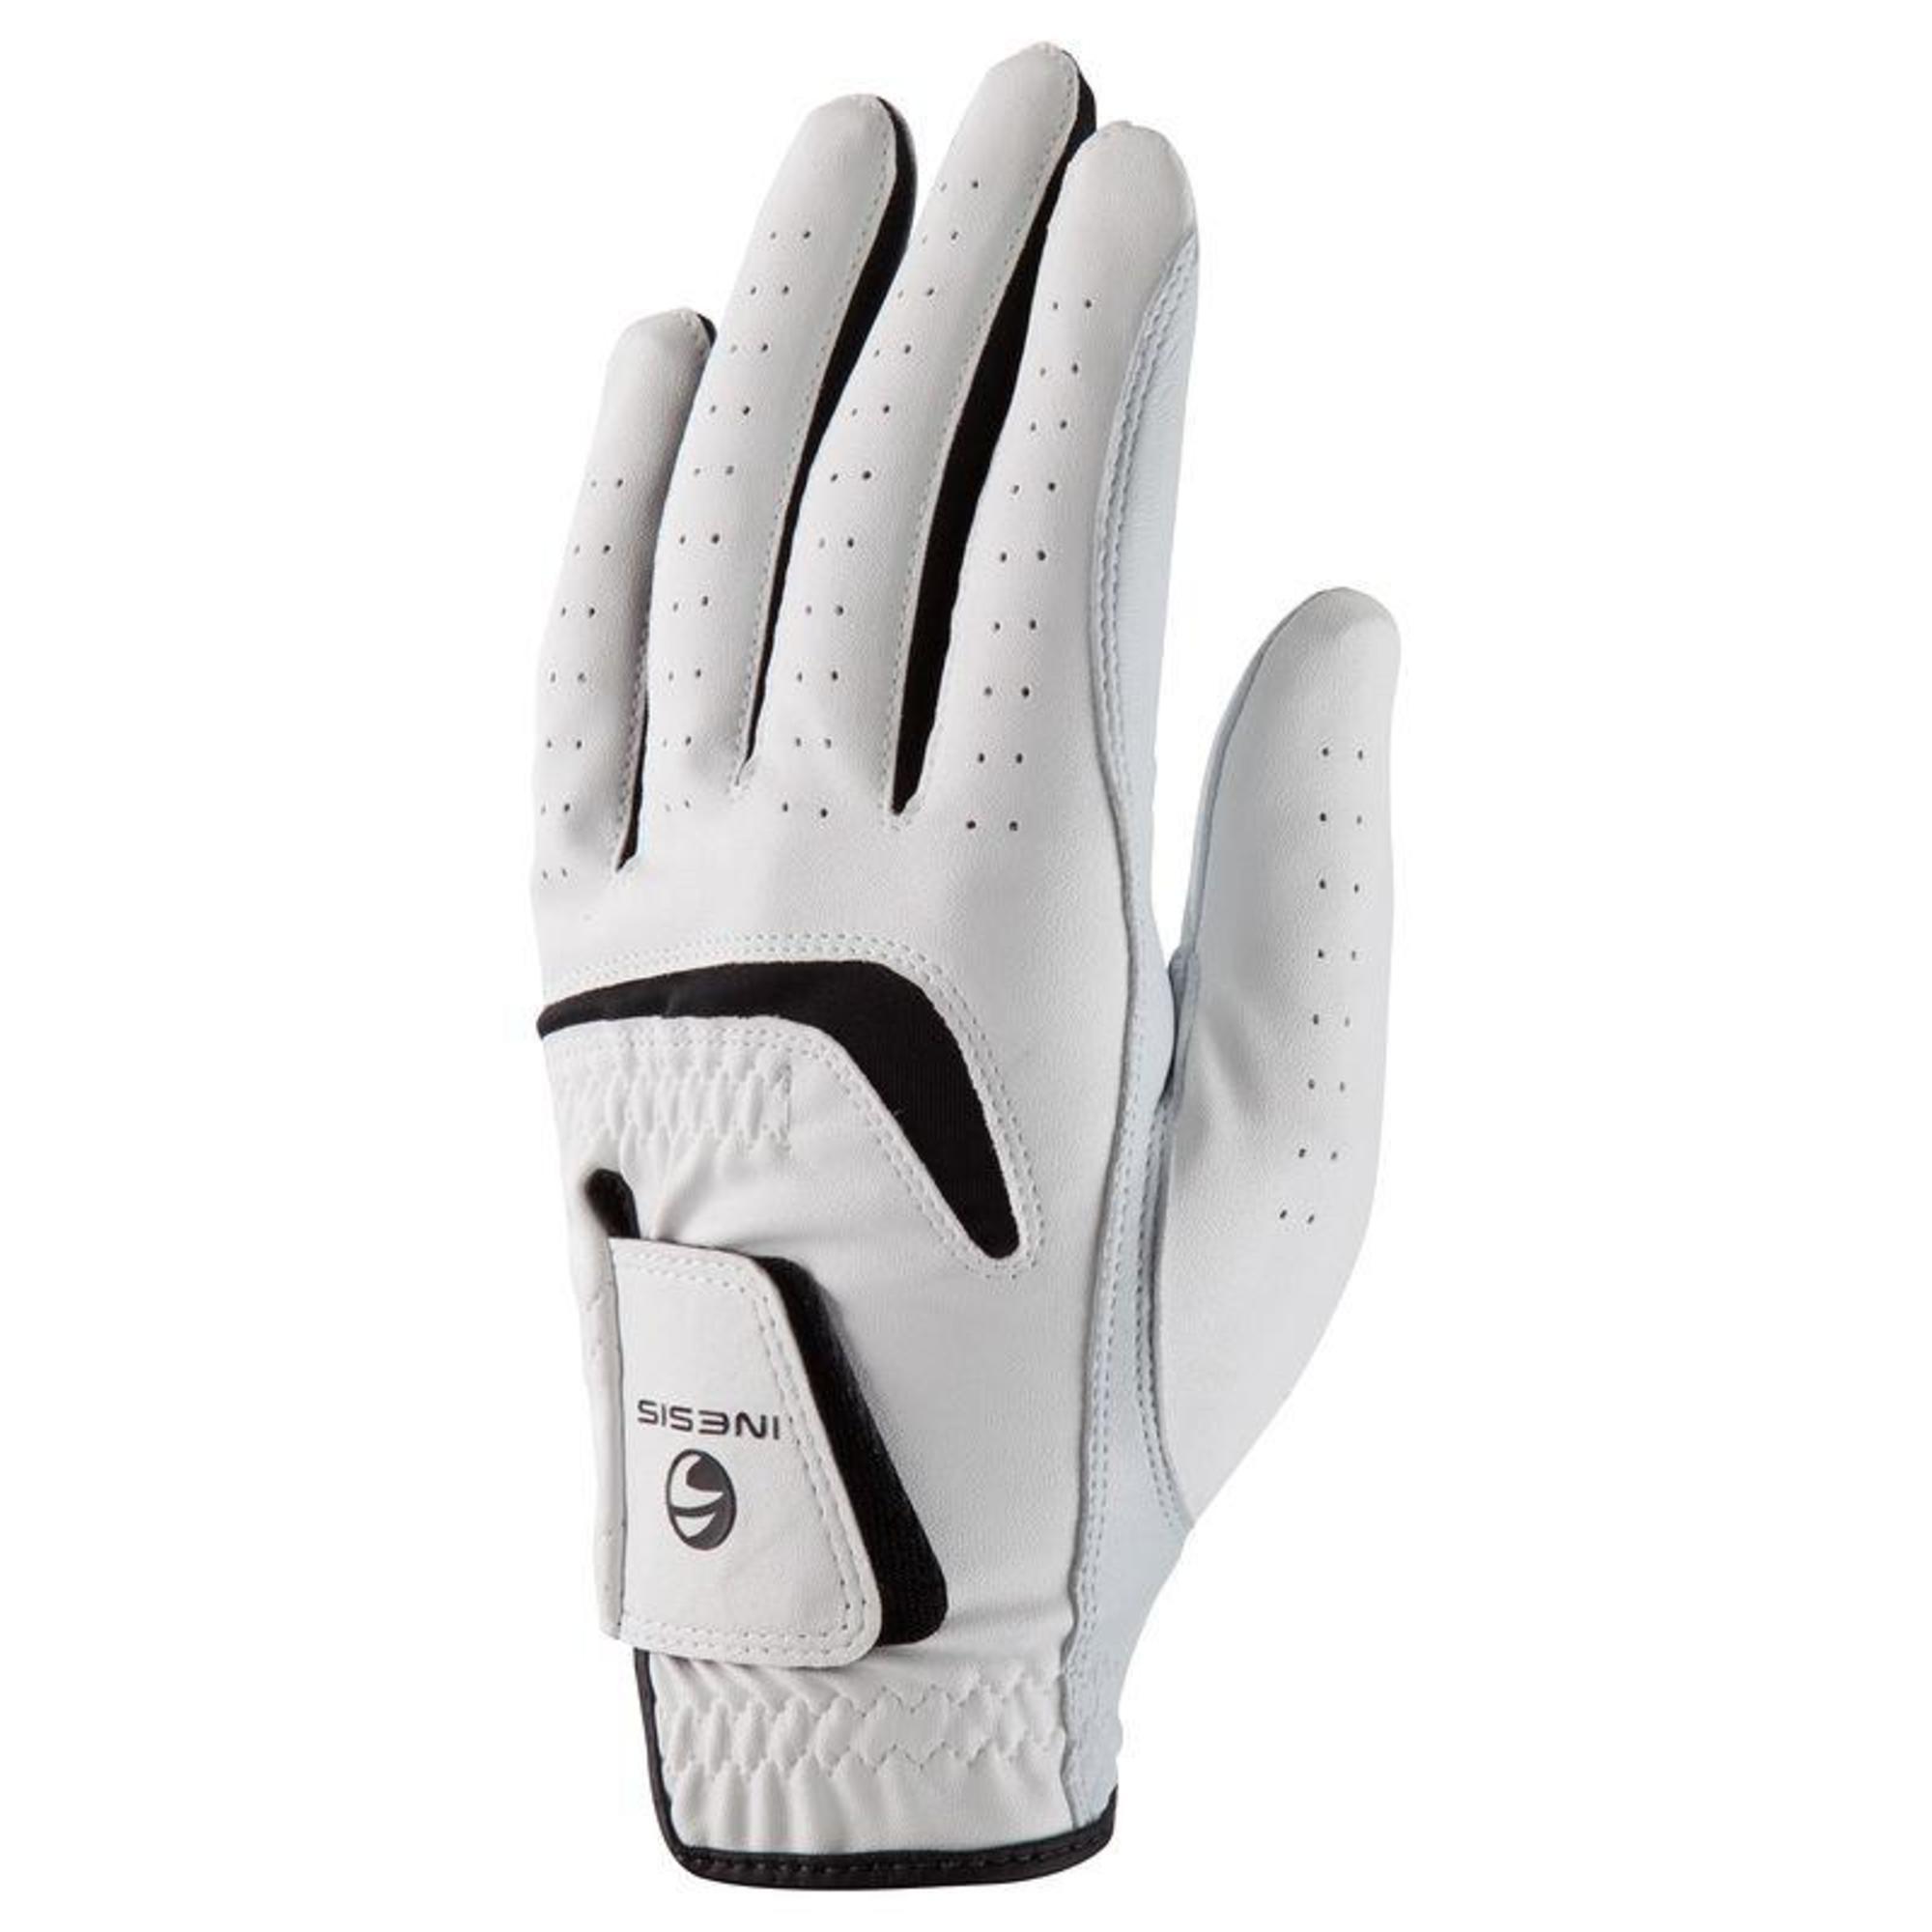 Men's Golf Glove 500 - White | Inesis Golf